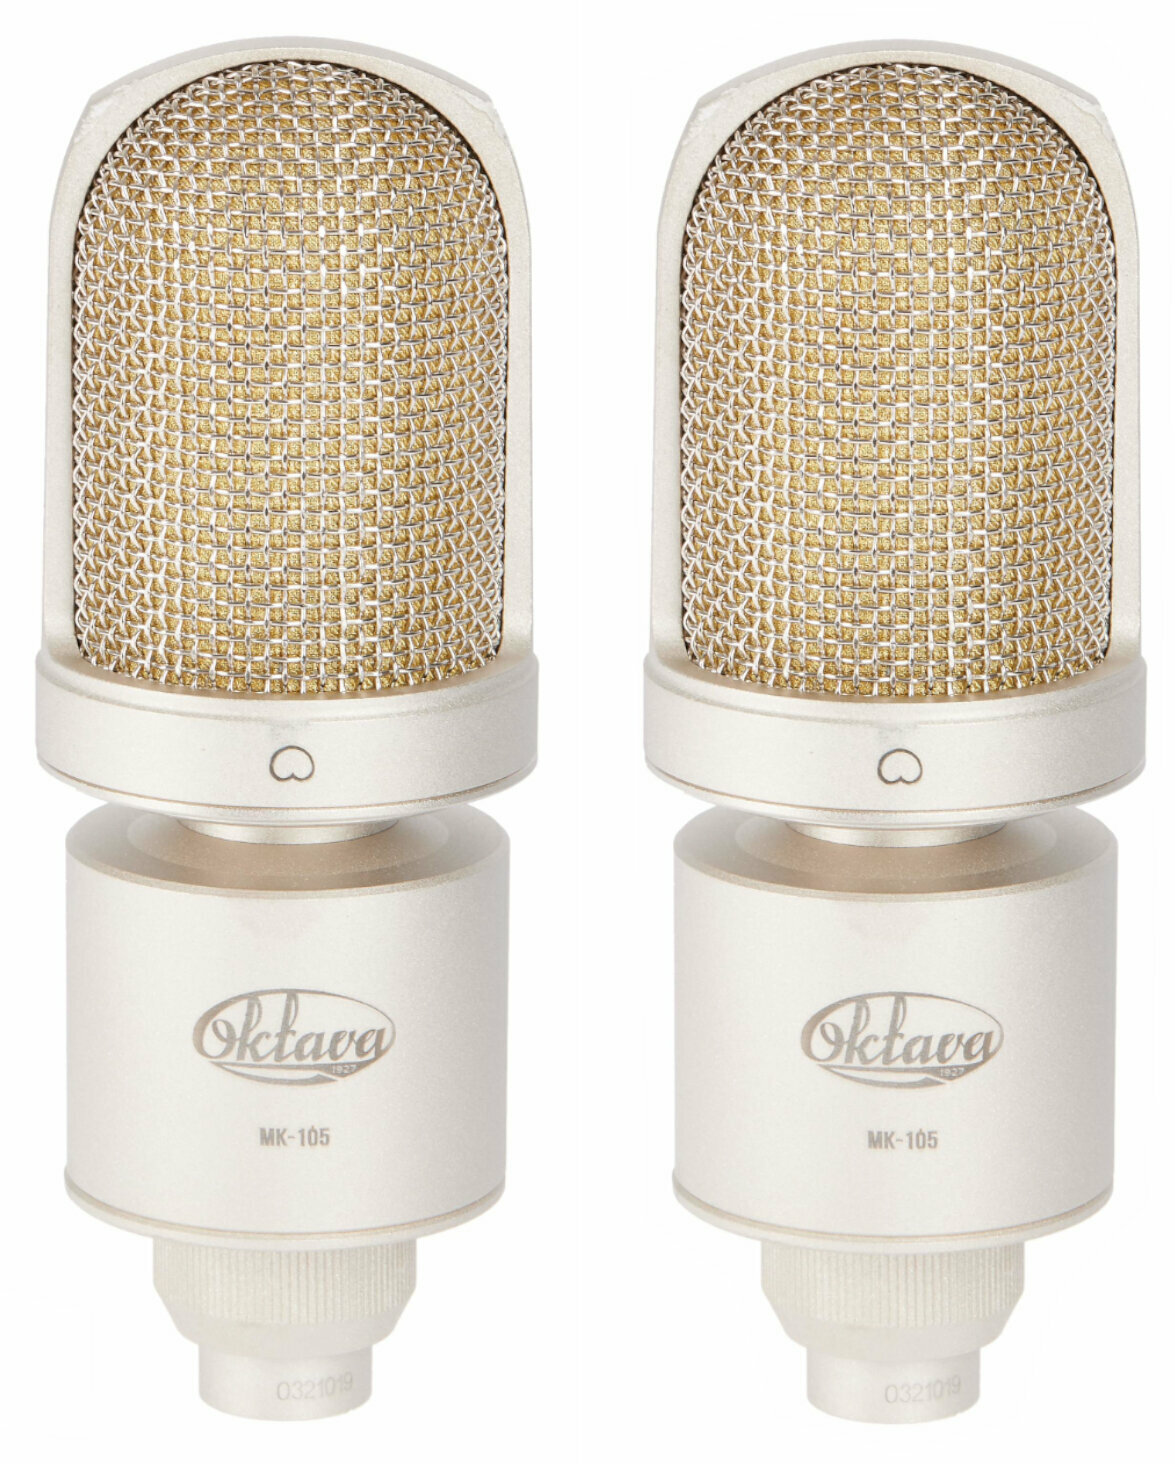 Microfone condensador de estúdio Oktava MK-105 stereo pair Microfone condensador de estúdio